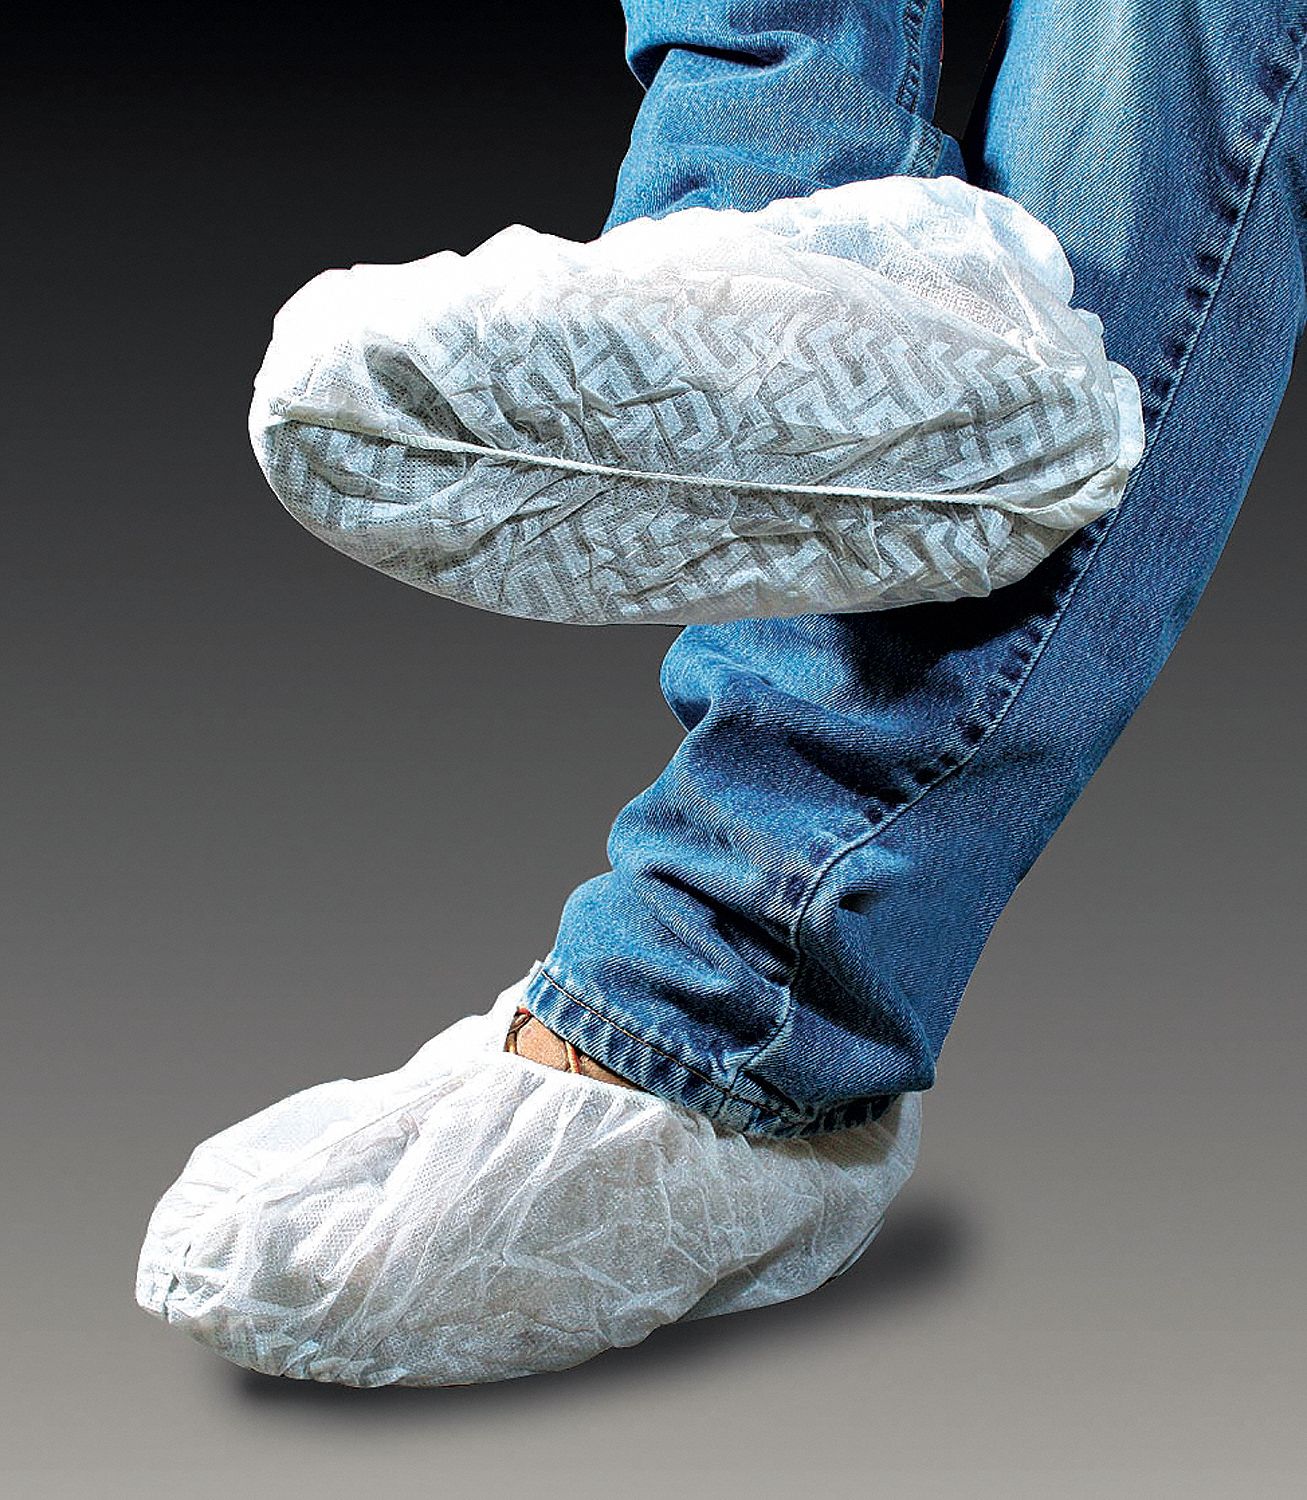 CELLUCAP, Polypropylene, Includes Slip Resistant Sole, Shoe Covers ...